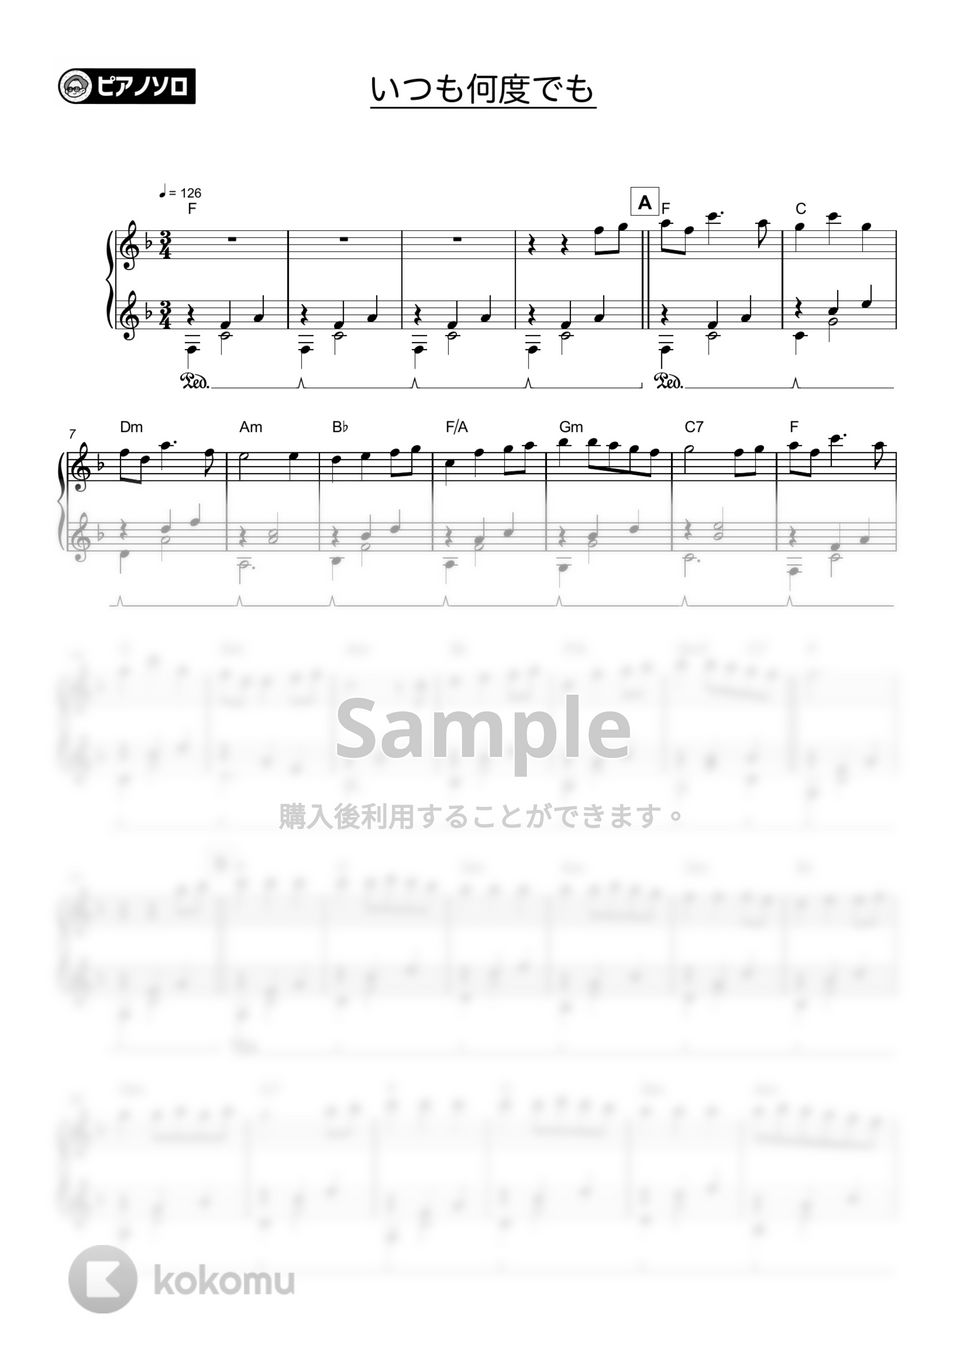 木村弓 - いつも何度でも by シータピアノ